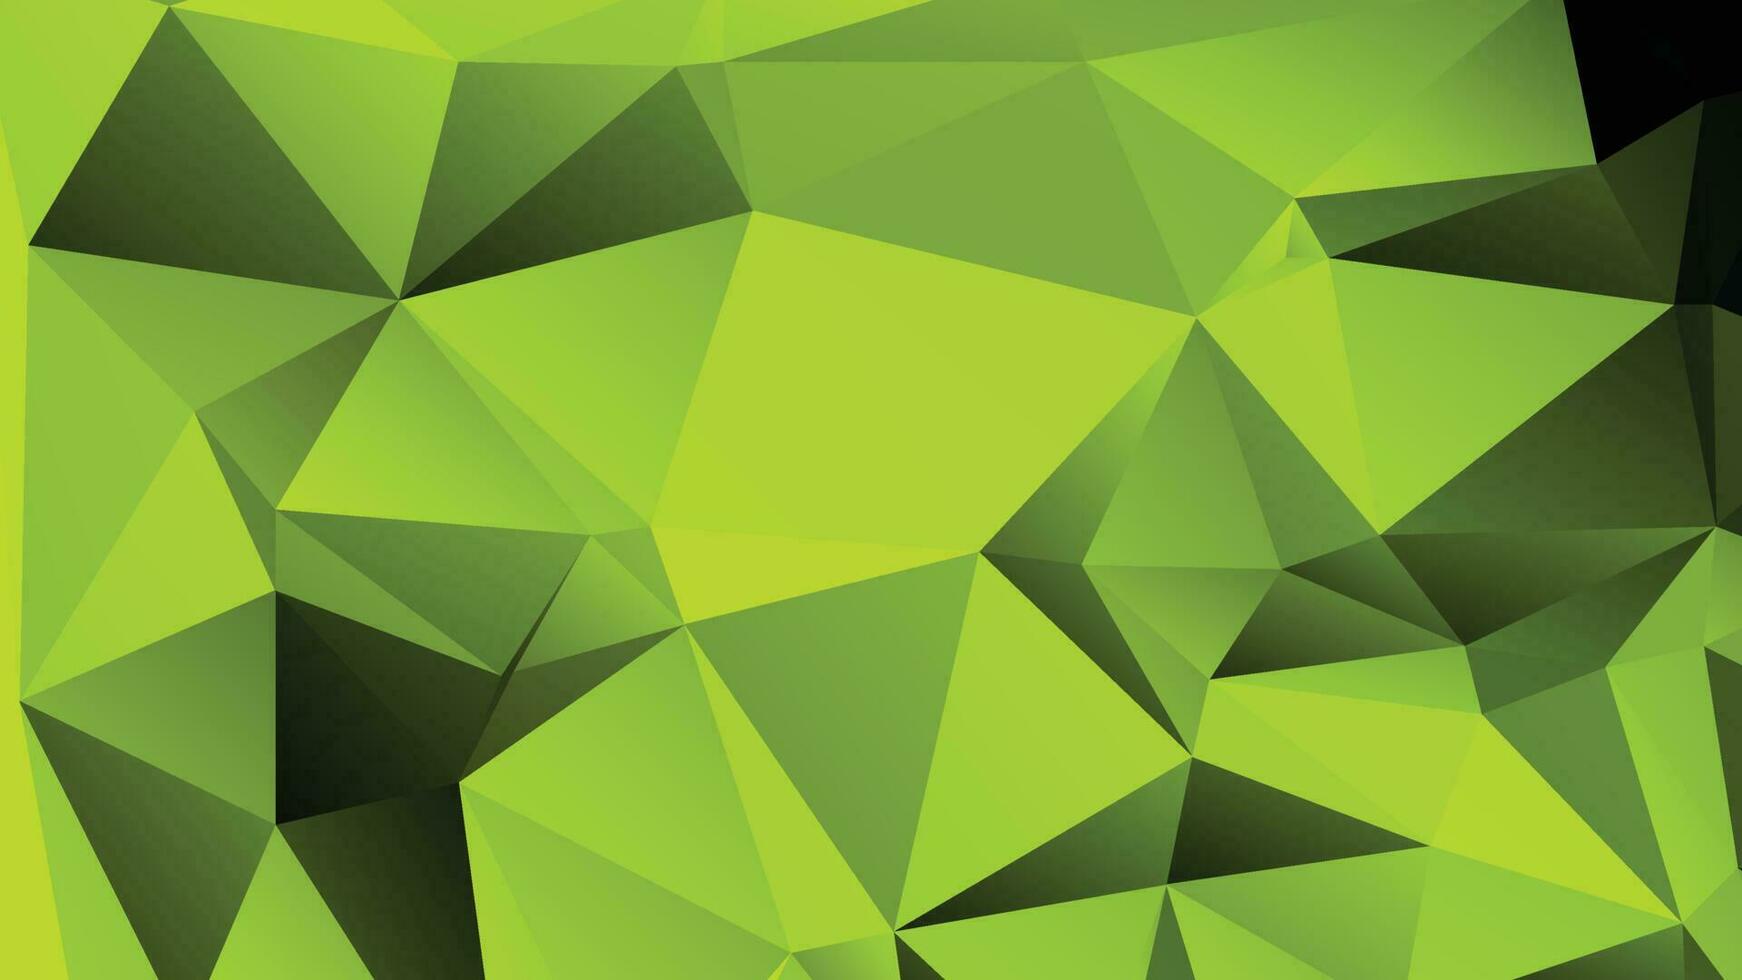 groen kleur veelhoek achtergrond ontwerp, abstract meetkundig origami stijl met helling vector